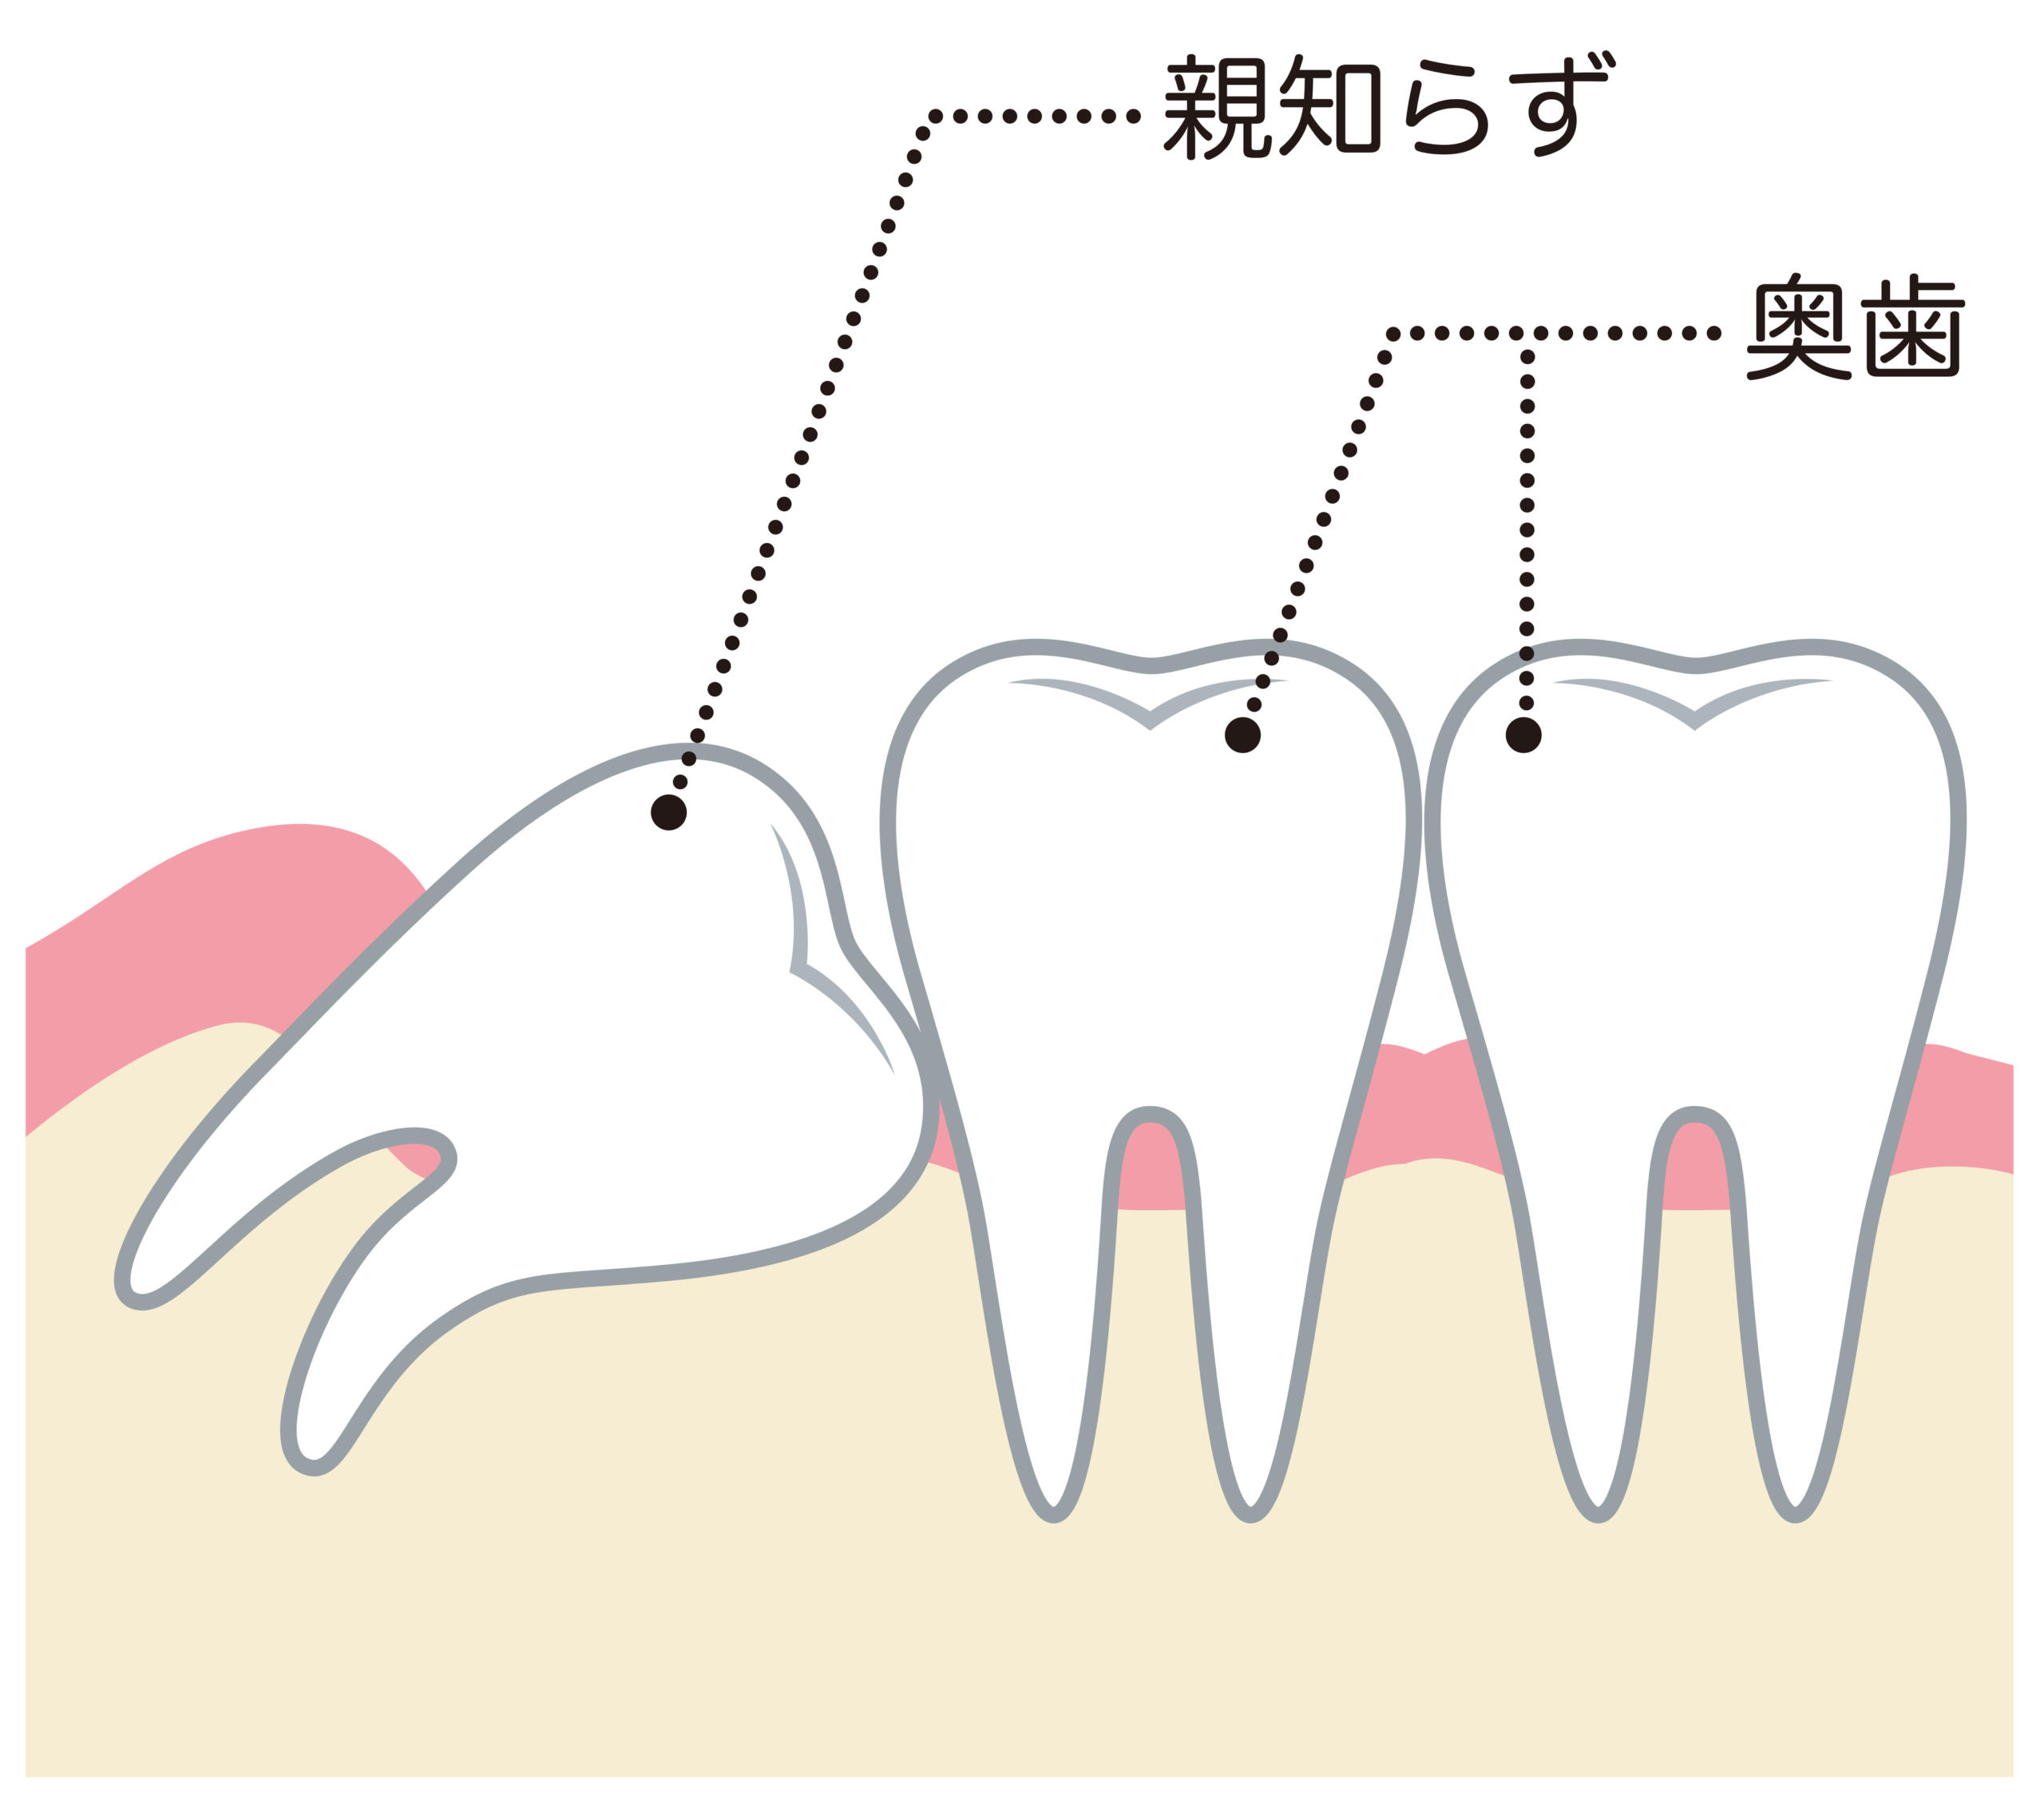 親知らずの痛みの原因4つ 痛い理由は歯茎の炎症や虫歯 その治療法は